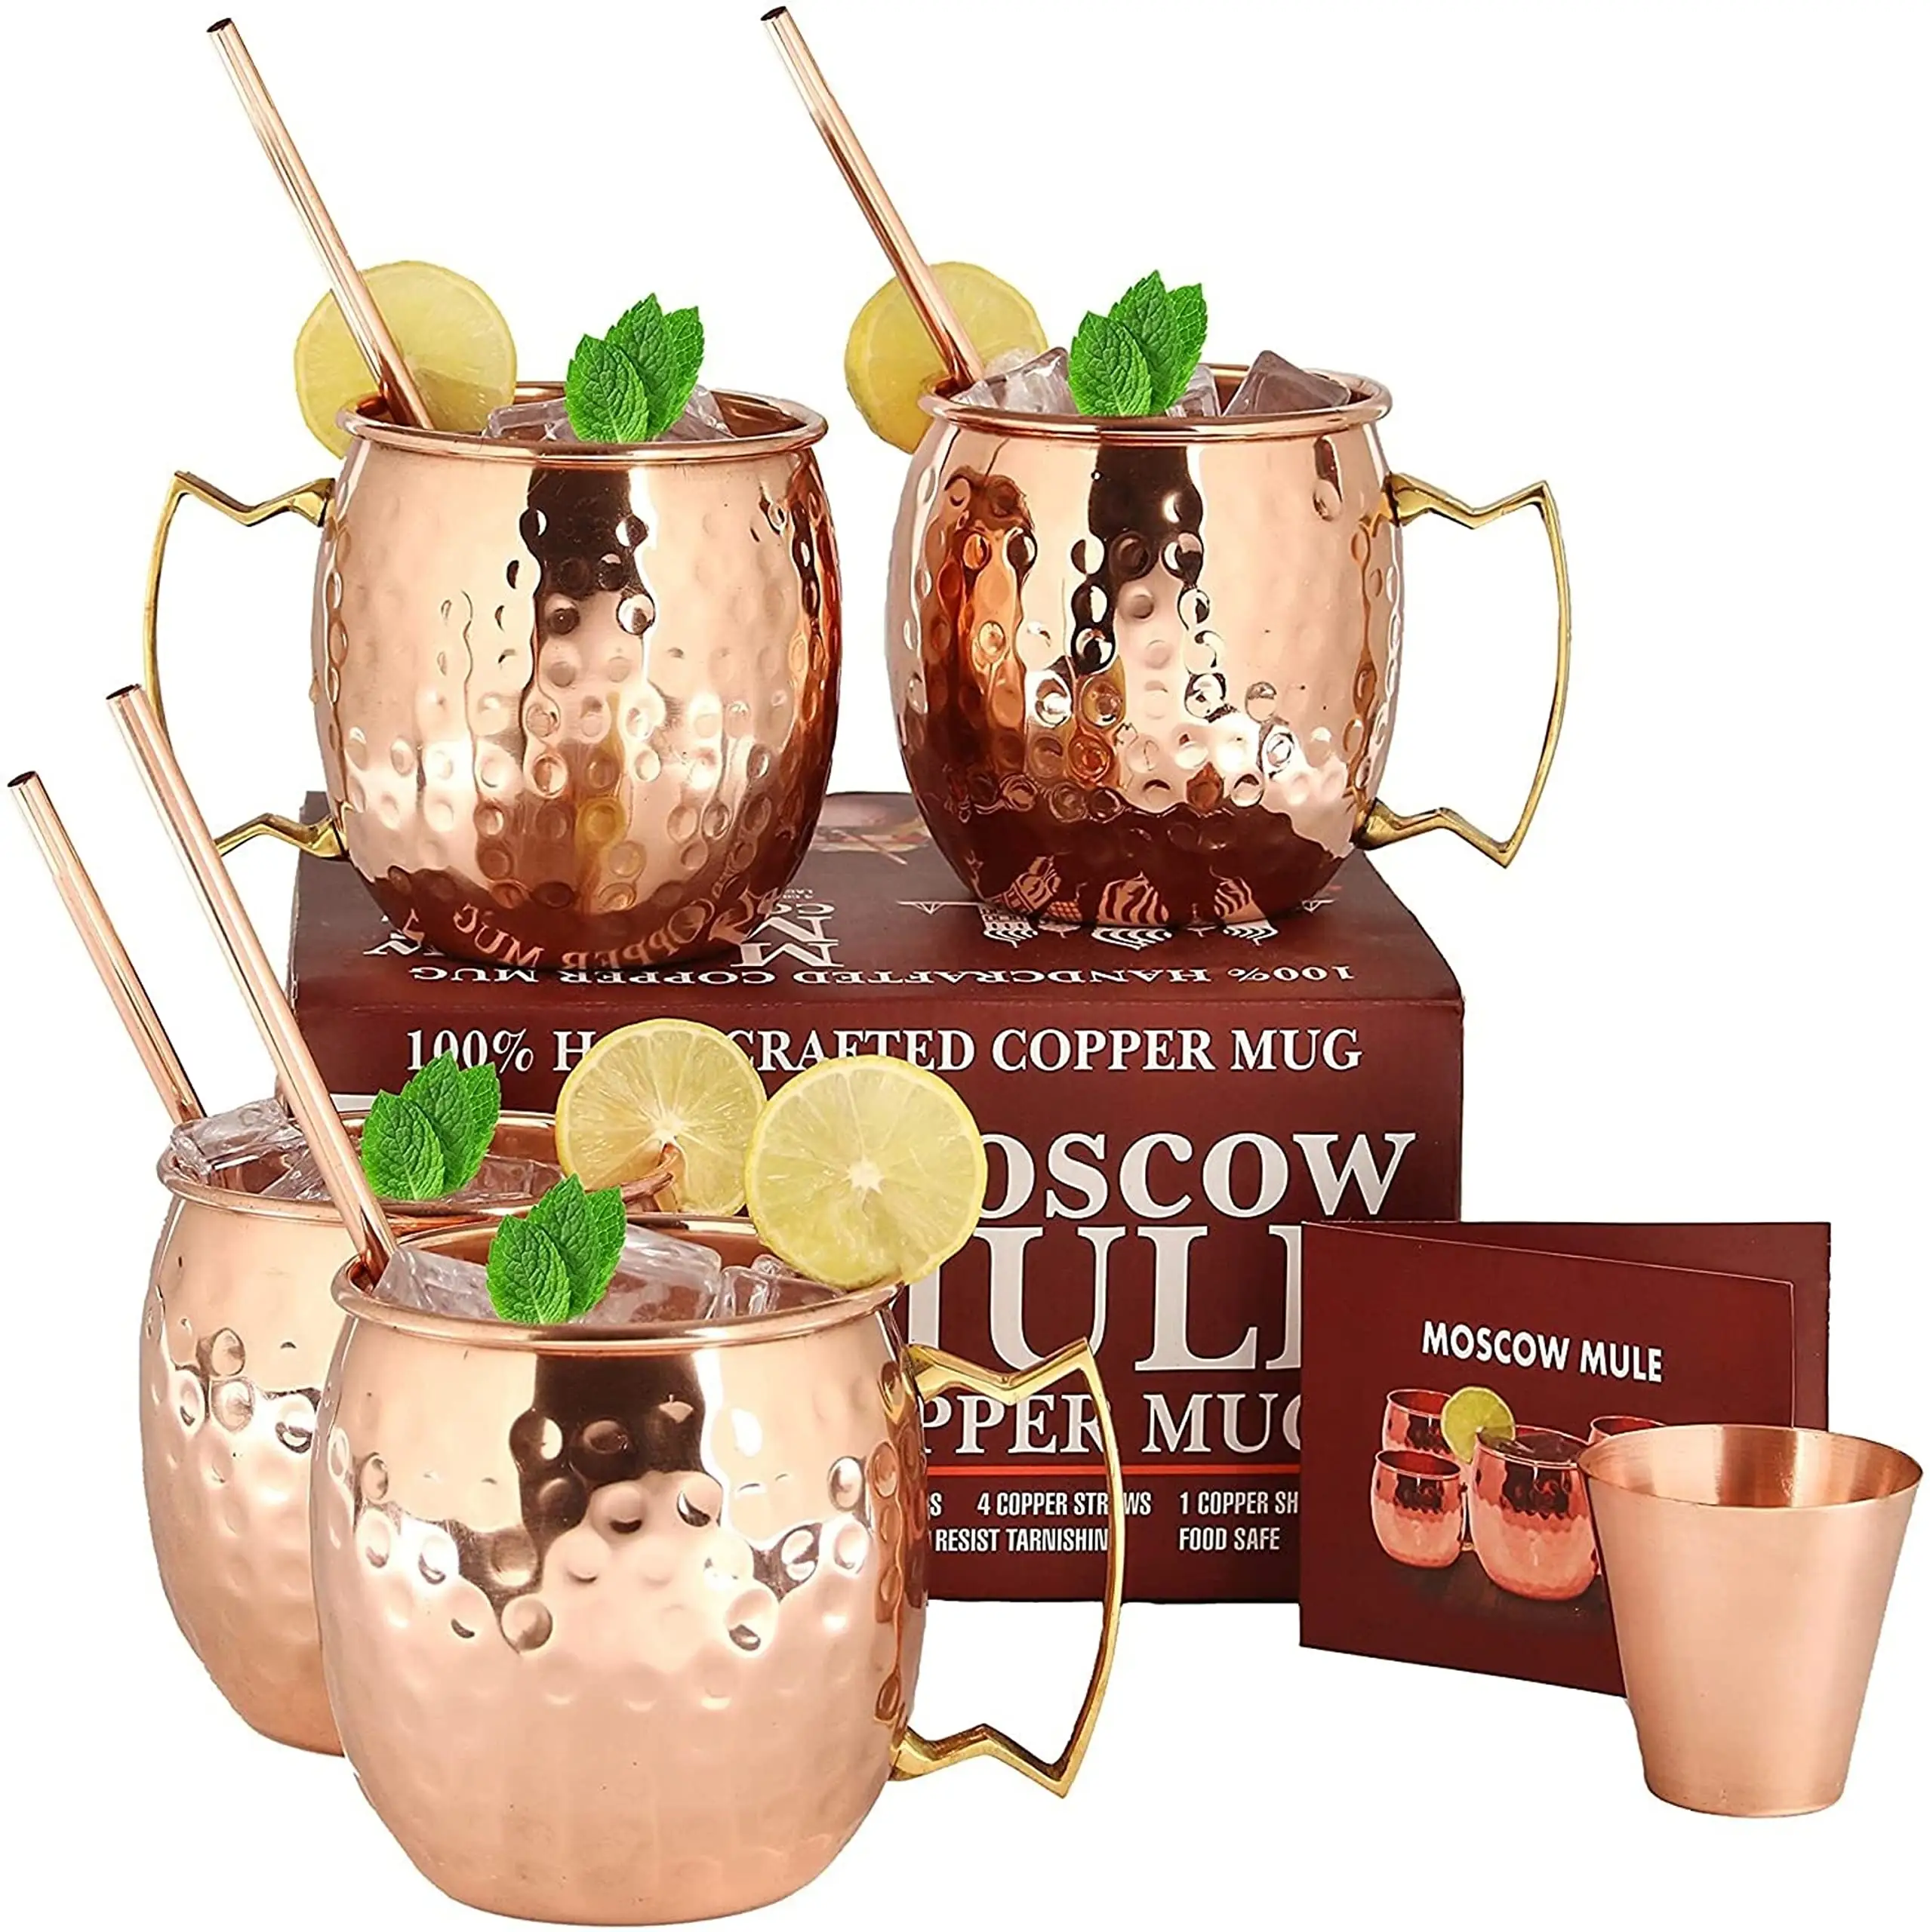 Moscow mule canecas de cobre-conjunto de 4 canecas de cobre-16 oz premium de presente conjunto com 4 canudos de cobre cobre